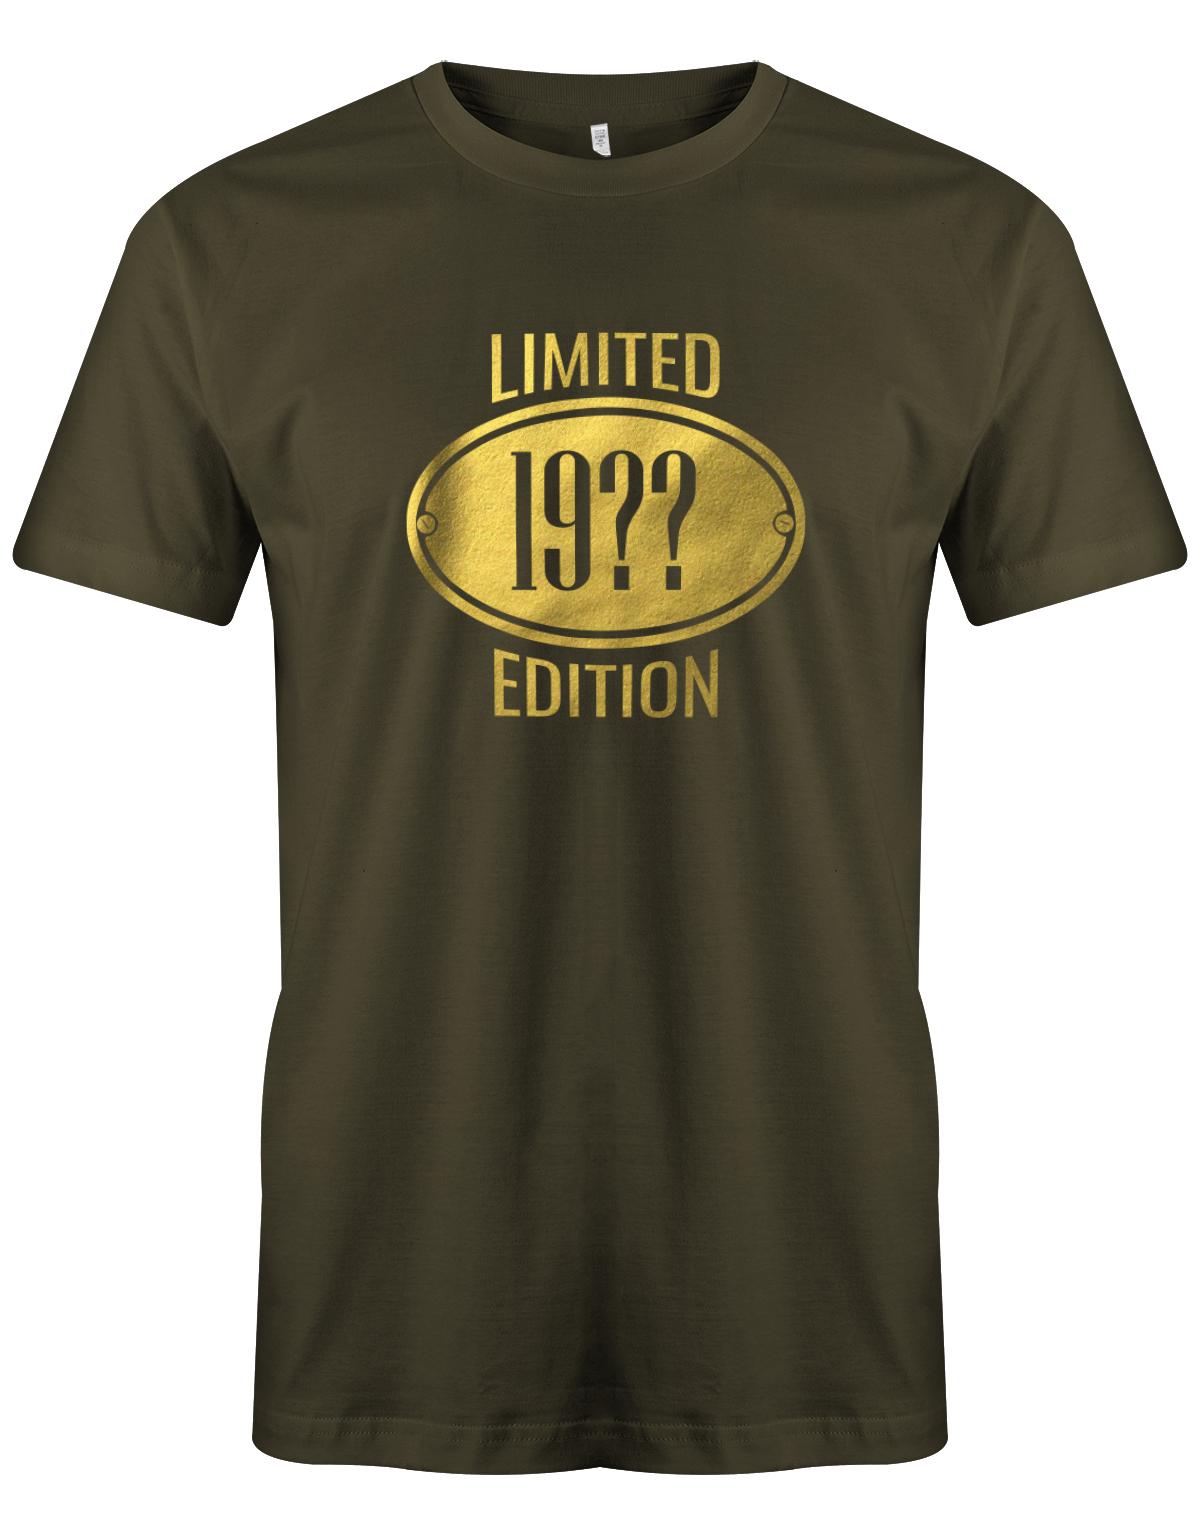 Limited-Edition-Gold-Schild-Herren-geburtstag-Shirt-Army